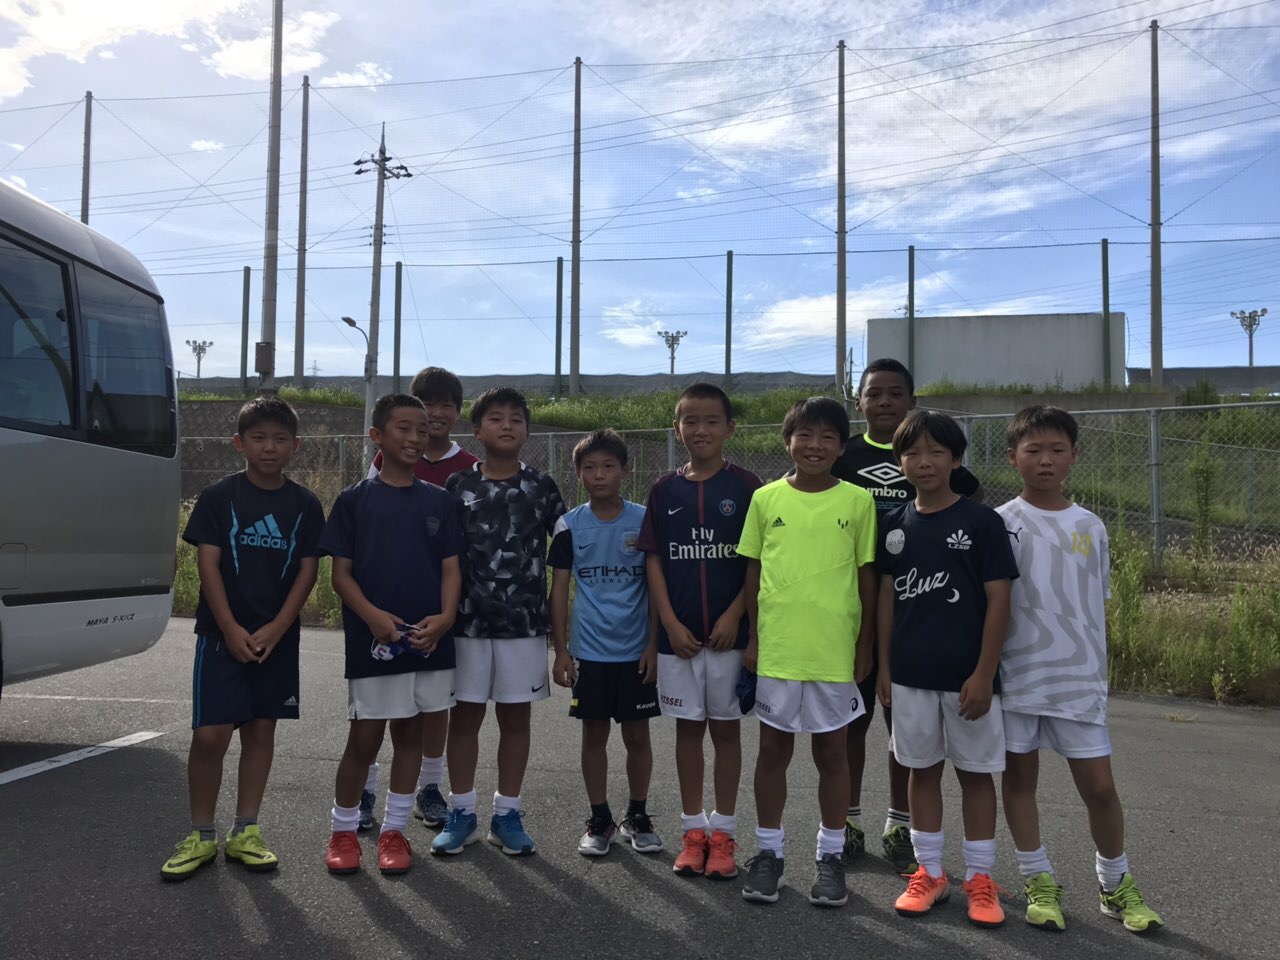 ヴィッセル神戸 サッカースクールブログ ヴィッセルスーパークラスu11名古屋キャンプ 初日